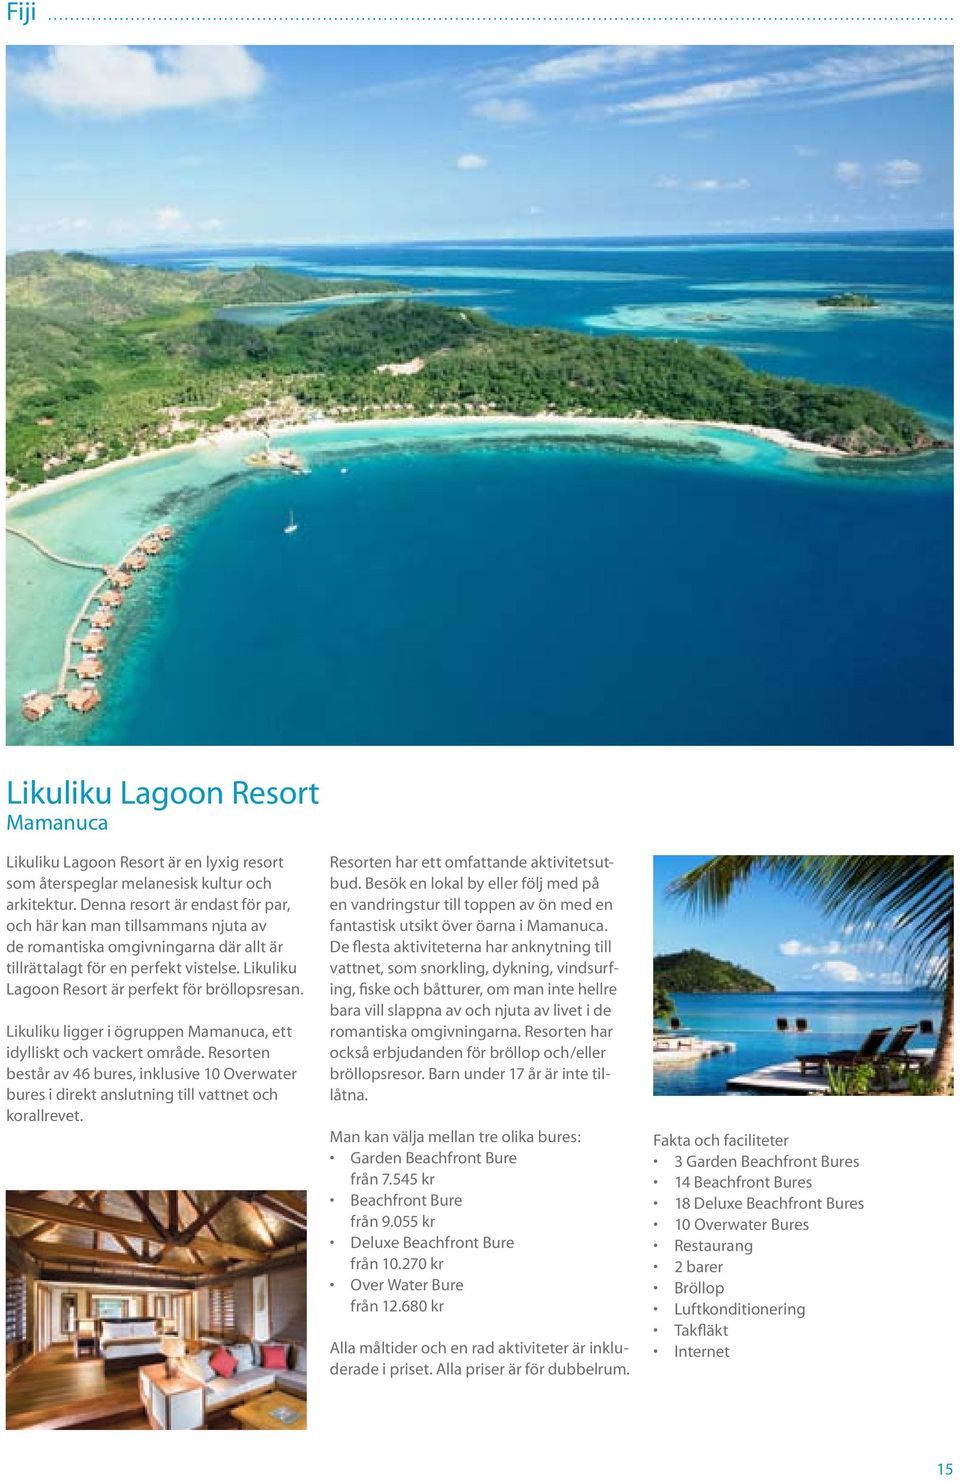 Likuliku ligger i ögruppen Mamanuca, ett idylliskt och vackert område. Resorten består av 46 bures, inklusive 10 Overwater bures i direkt anslutning till vattnet och korallrevet.